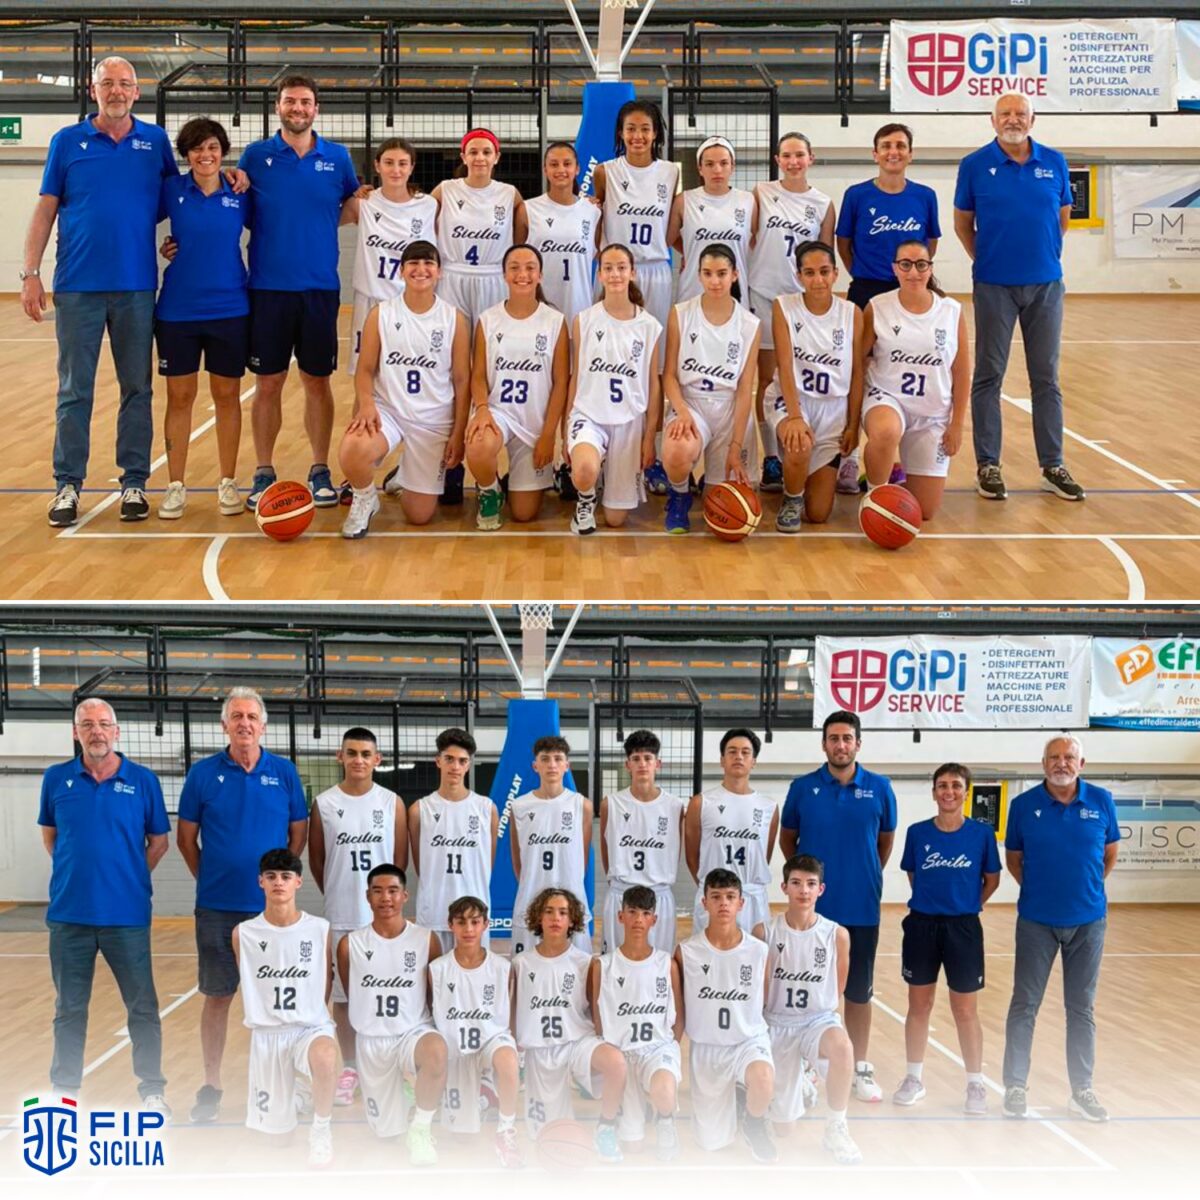 Successo iniziale per la Sicilia all'Apulia Basket Cup